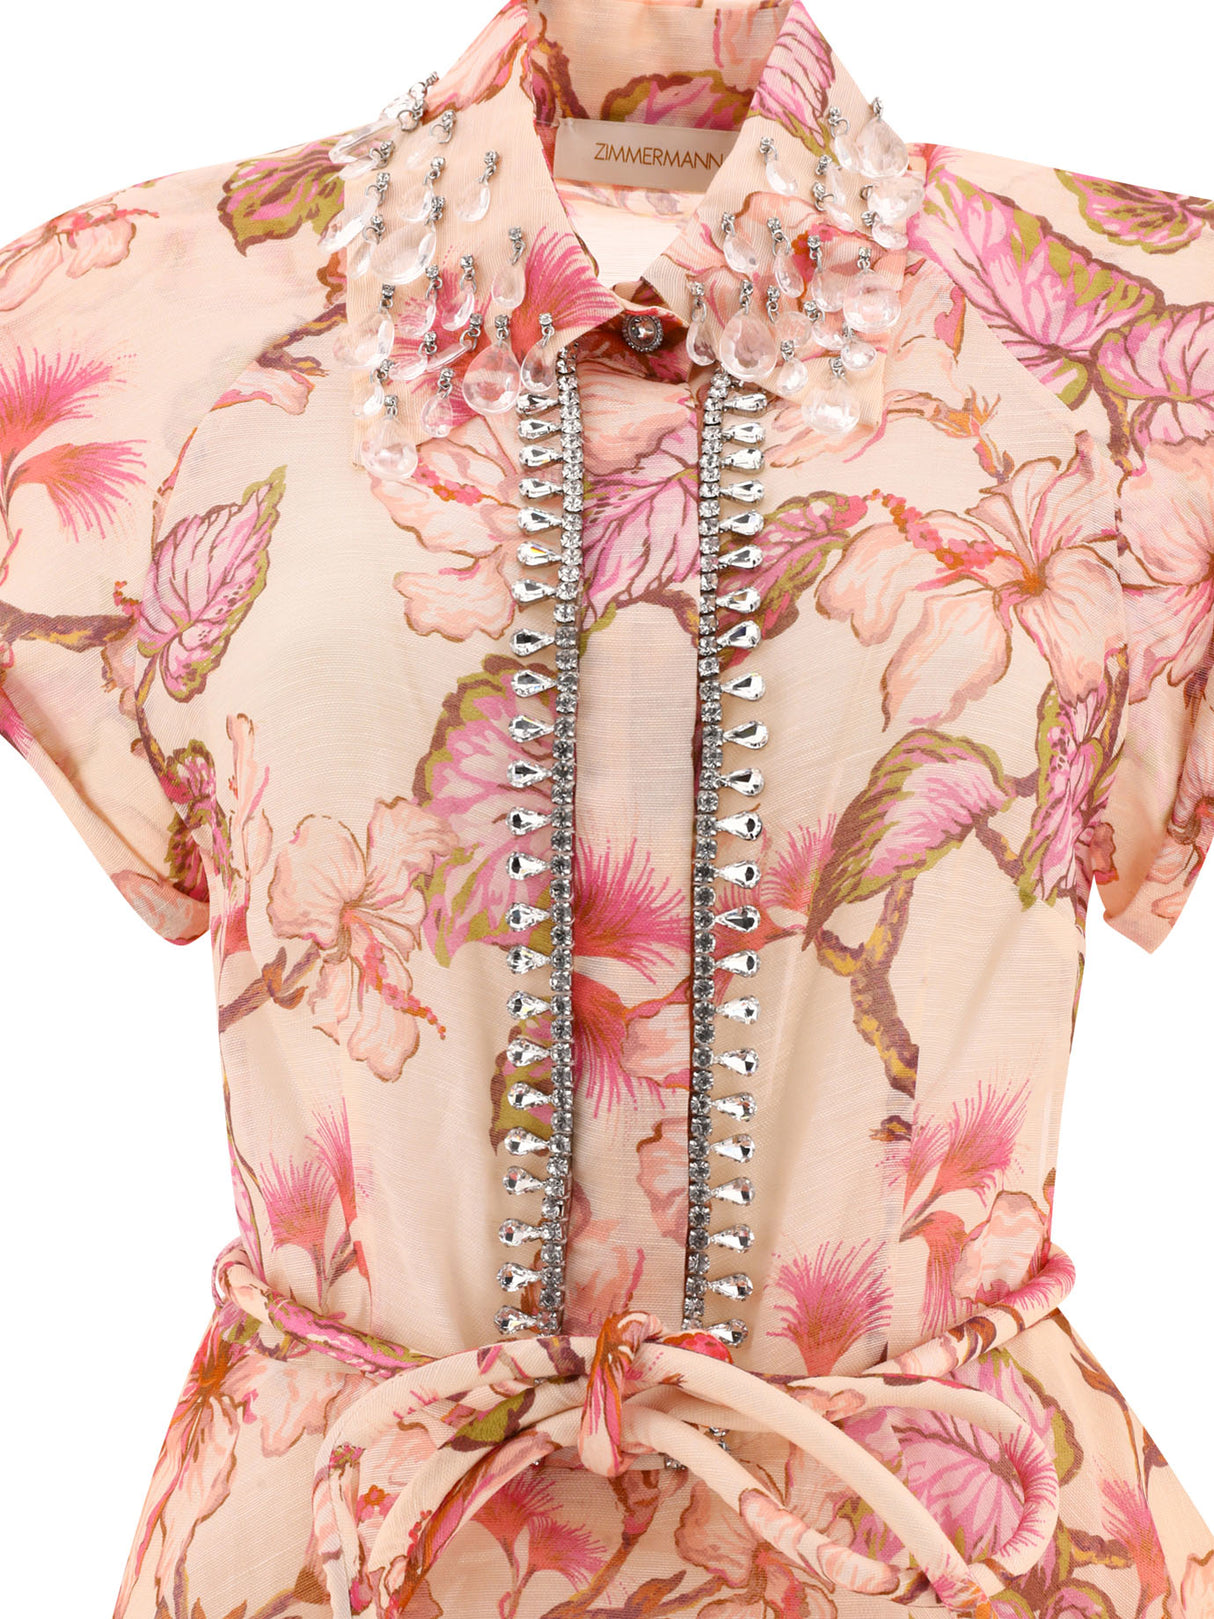 粉色亮麗亞麻絲長裙，腰帶及飾物點綴